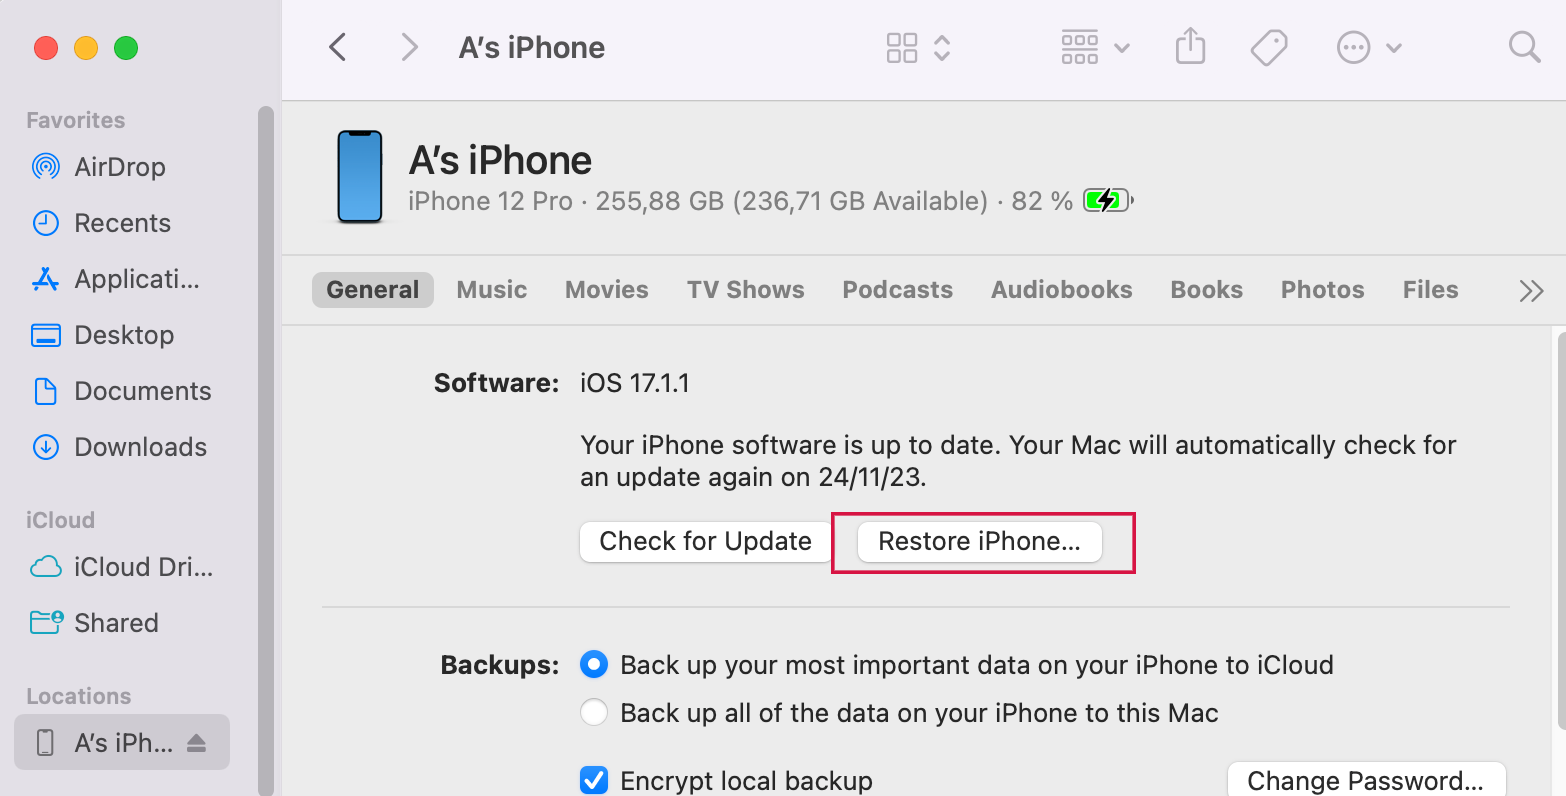 Restore iPhone via iTunes